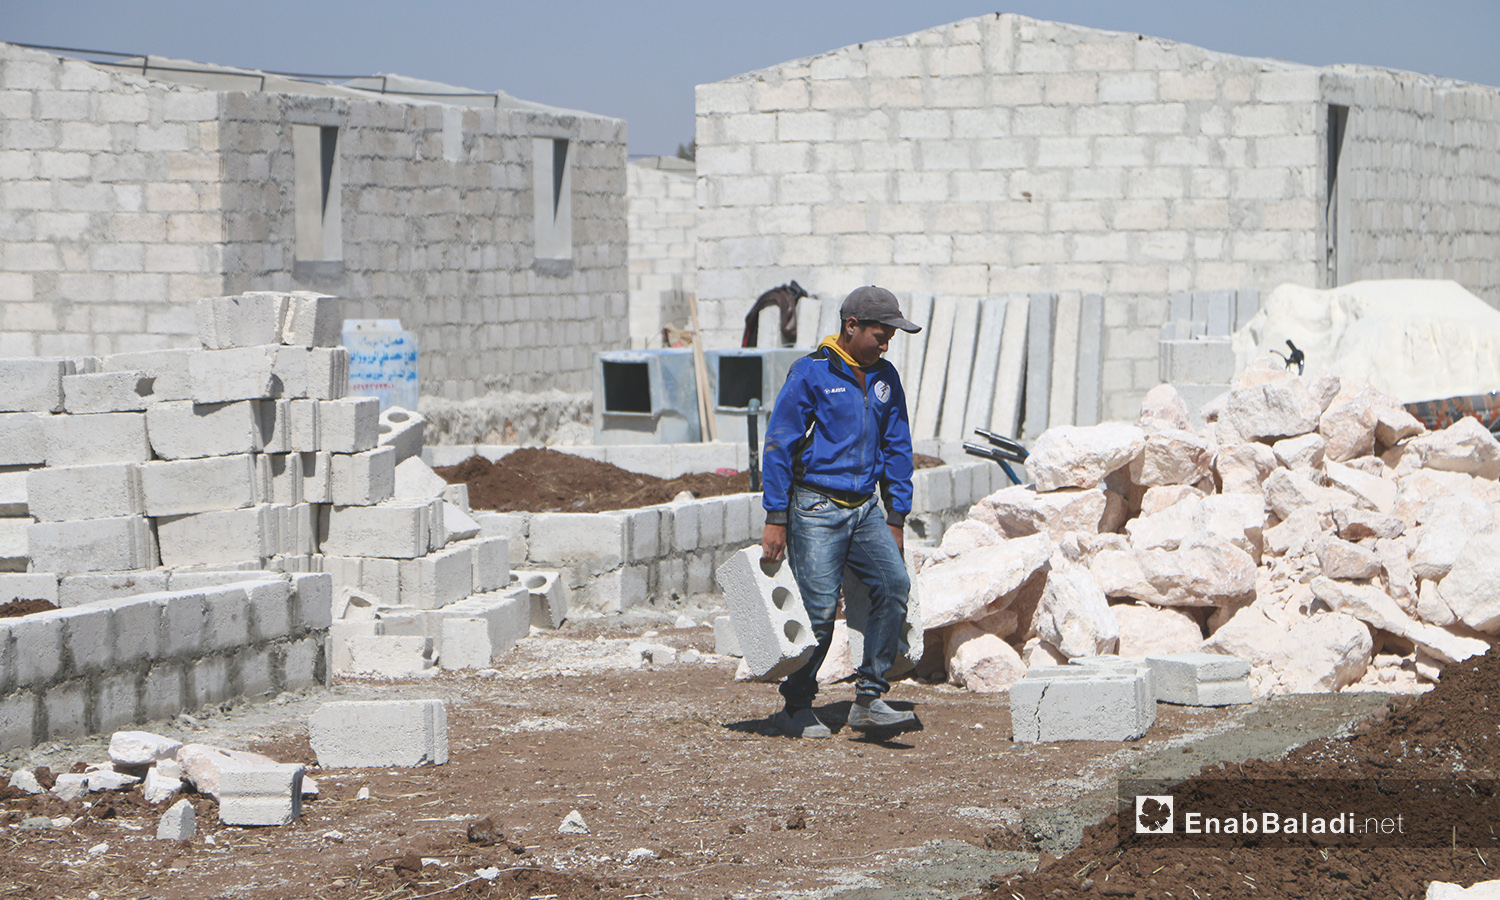 عامل بناء ضمن مشروع الكتل السكنية عوضًا عن الخيام في قرية بحورته بريف حلب الشمالي - 26 حزيران 2020 (عنب بلدي/عبد السلام مجعان)
